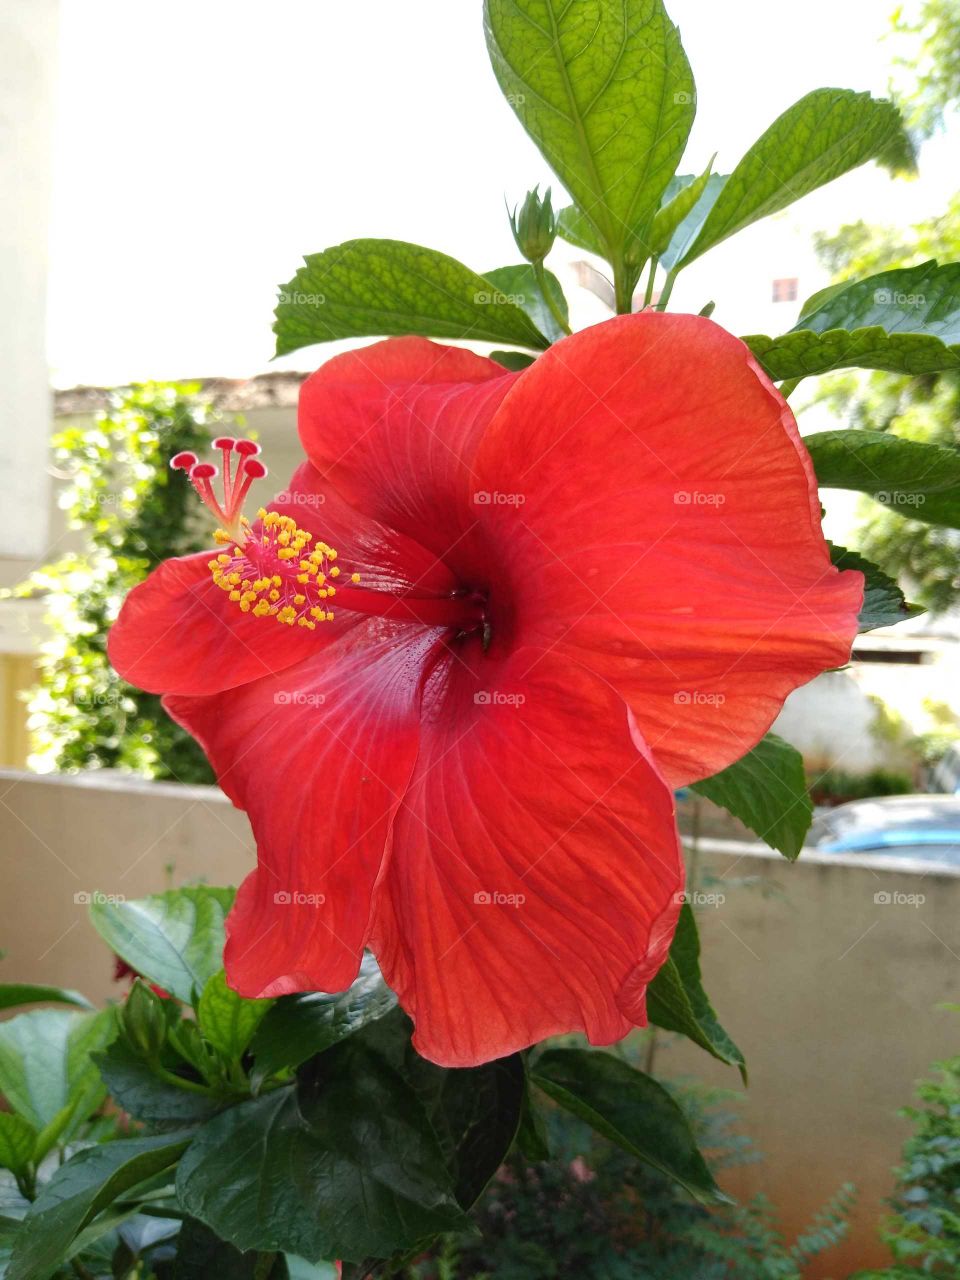 a red hibiscus flower in my garden